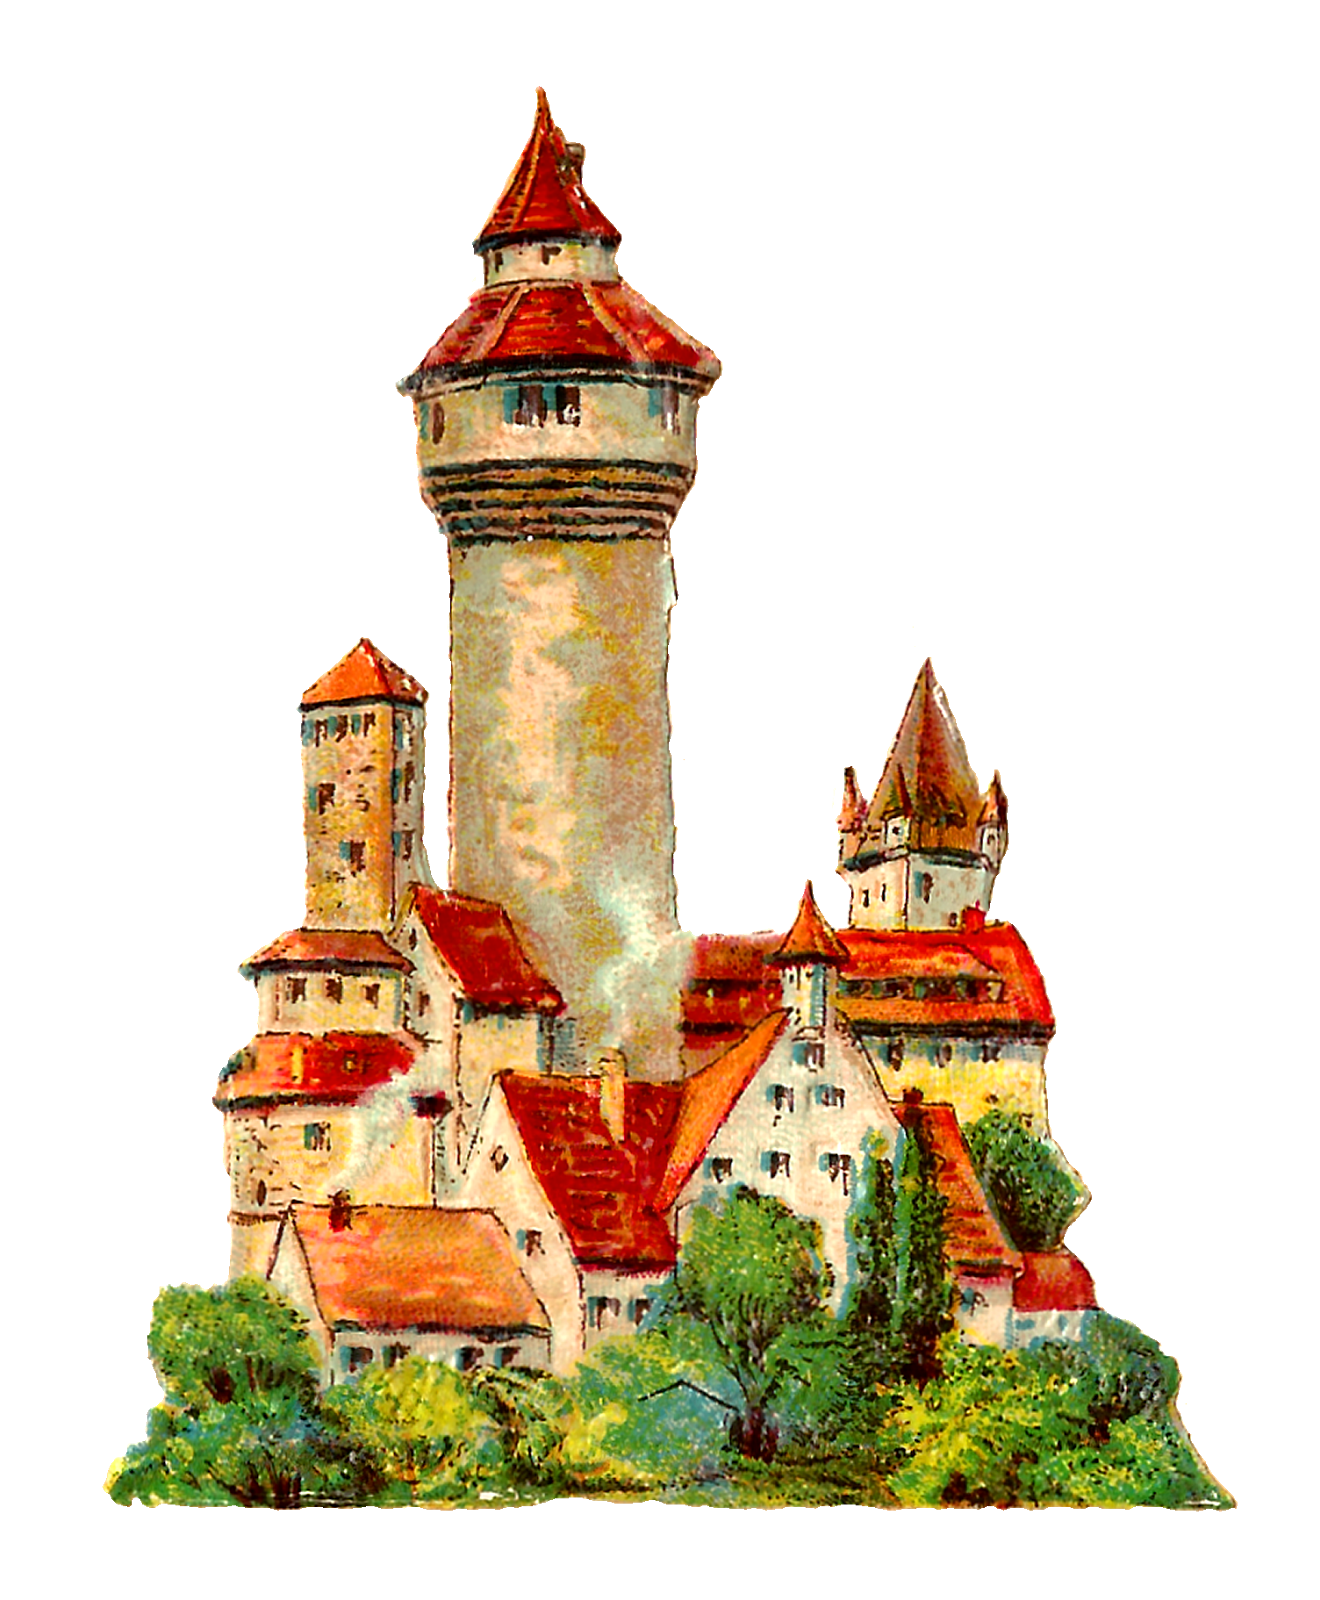 Antique images vintage architecture. Fairytale clipart castle german